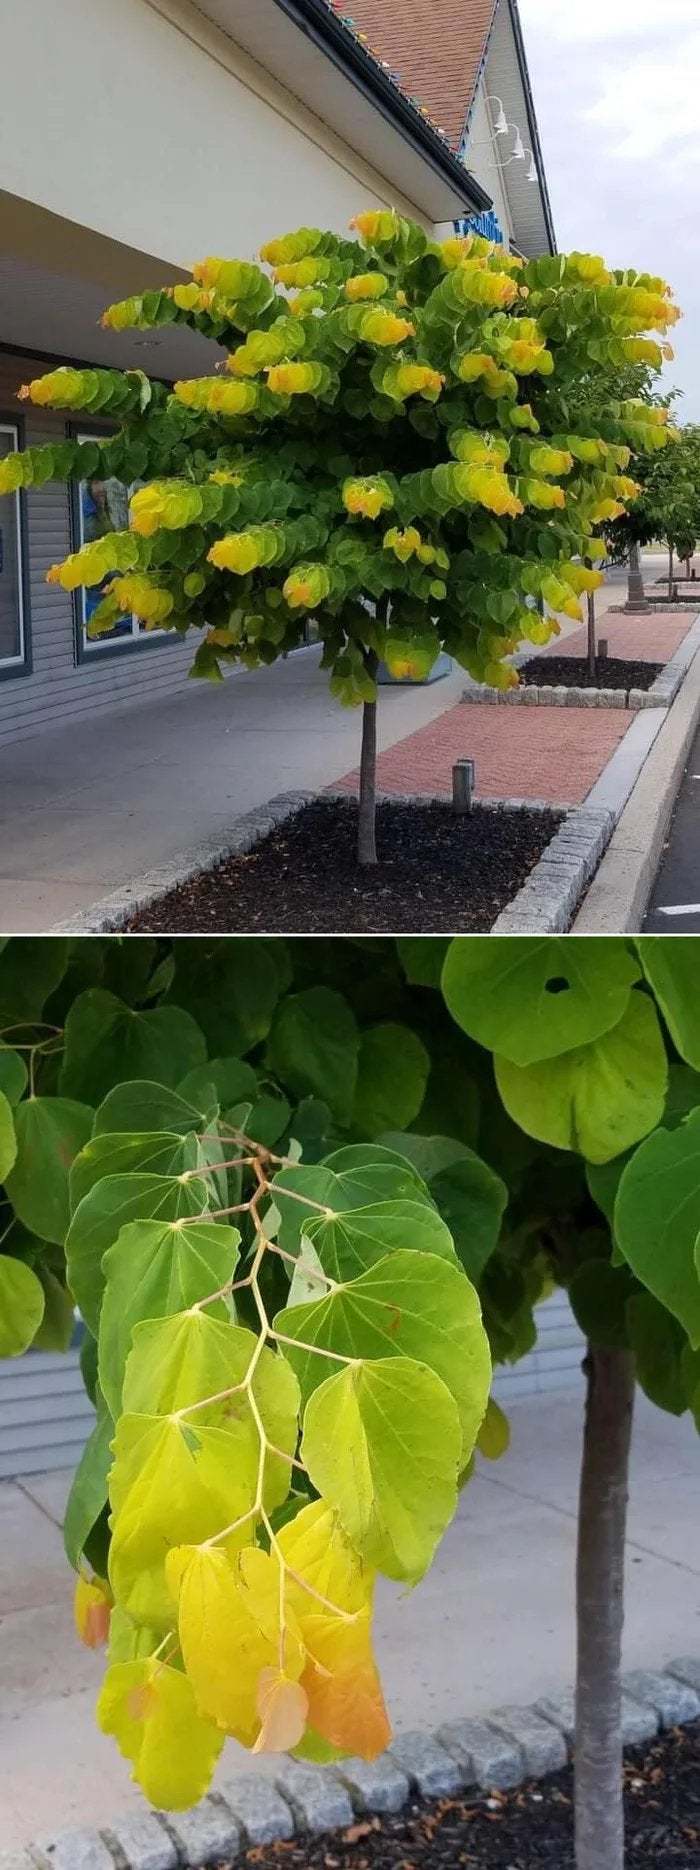 Las hojas de este árbol